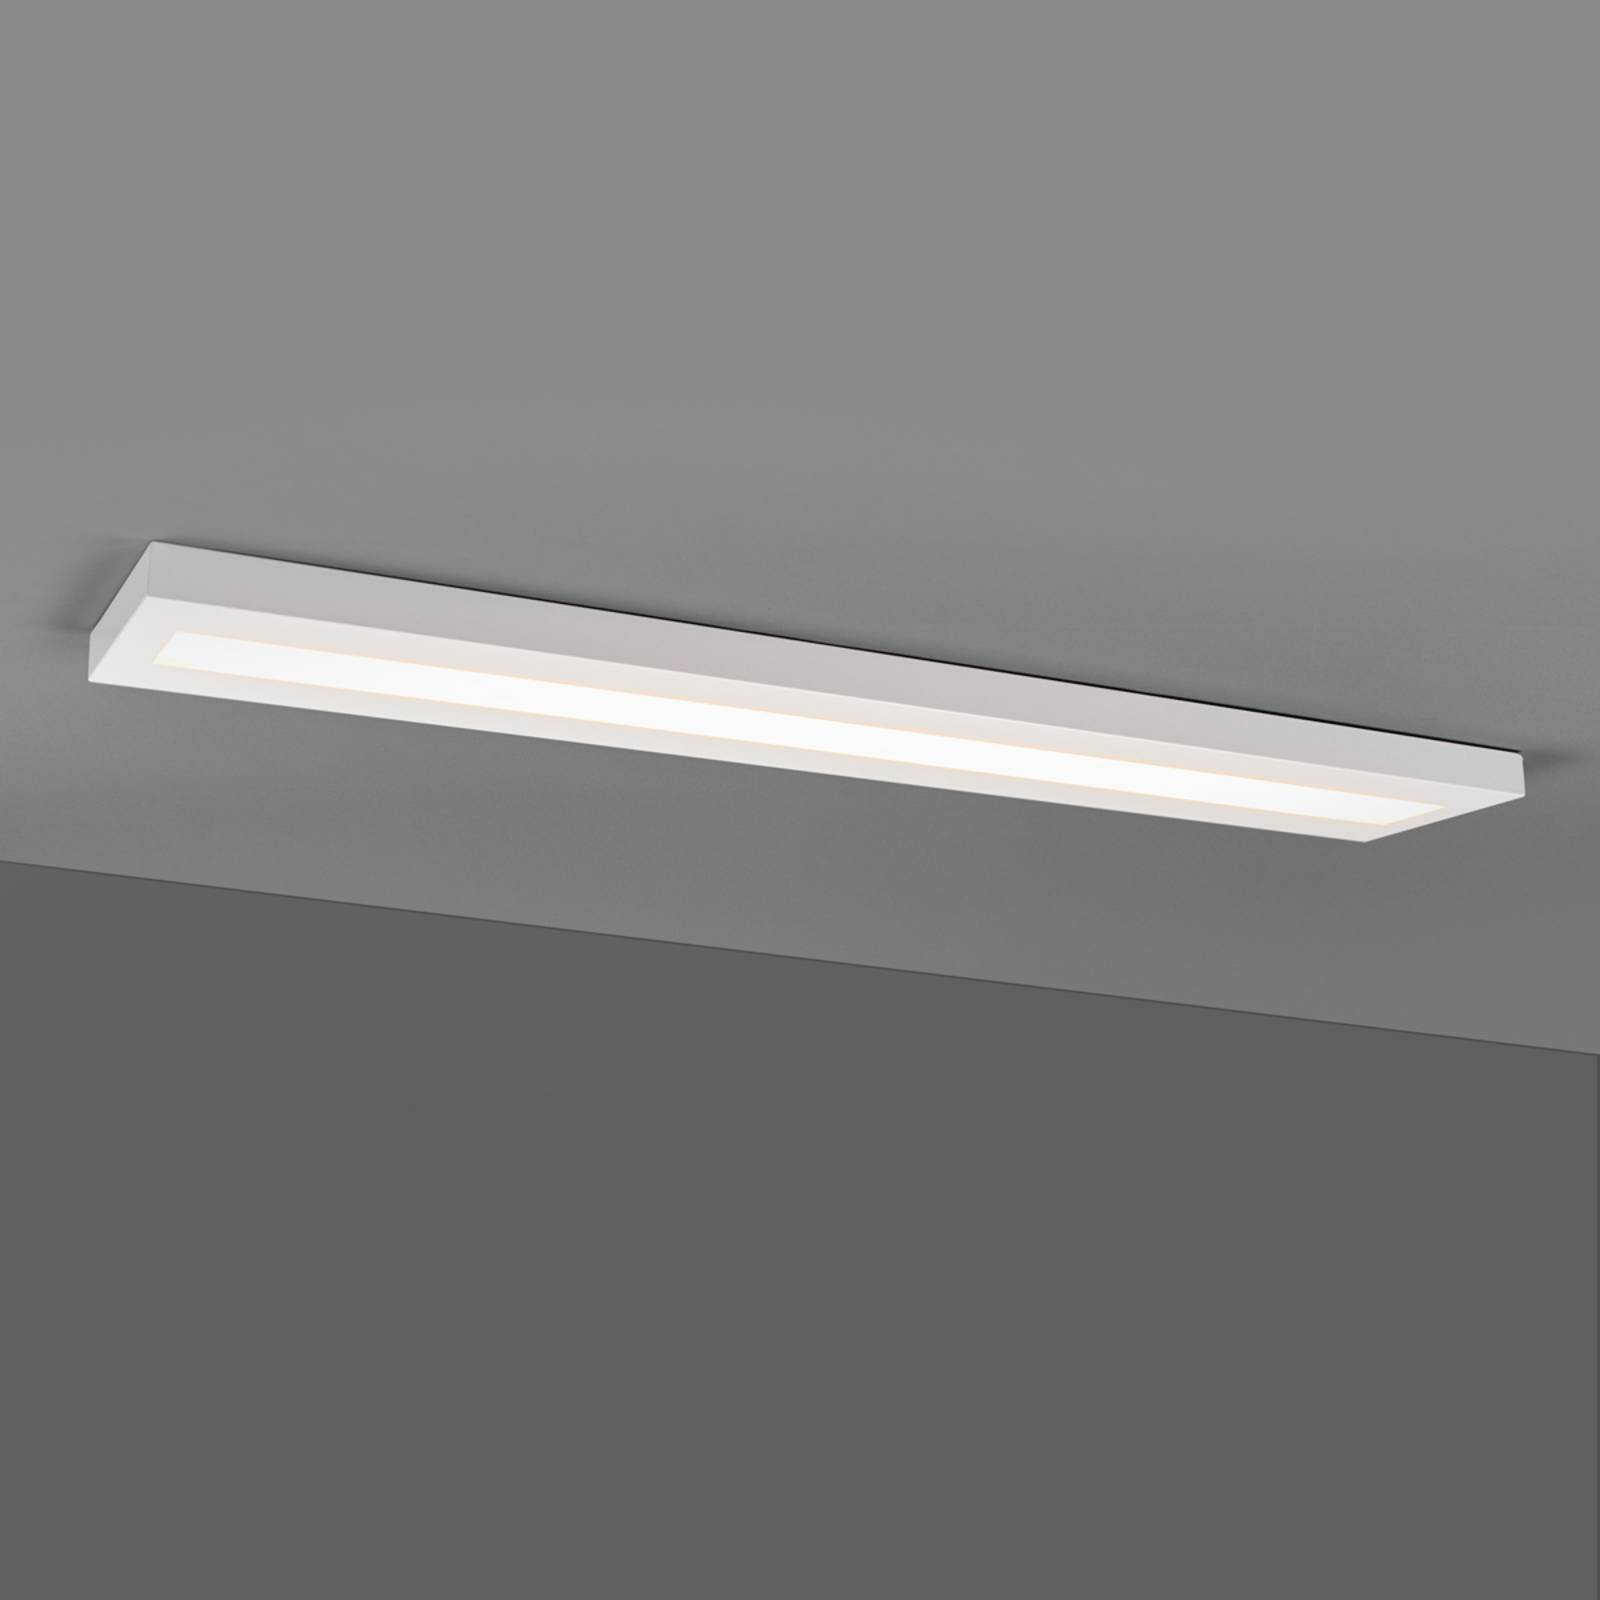 Längliche LED-Anbauleuchte 120 cm weiß, BAP von EGG